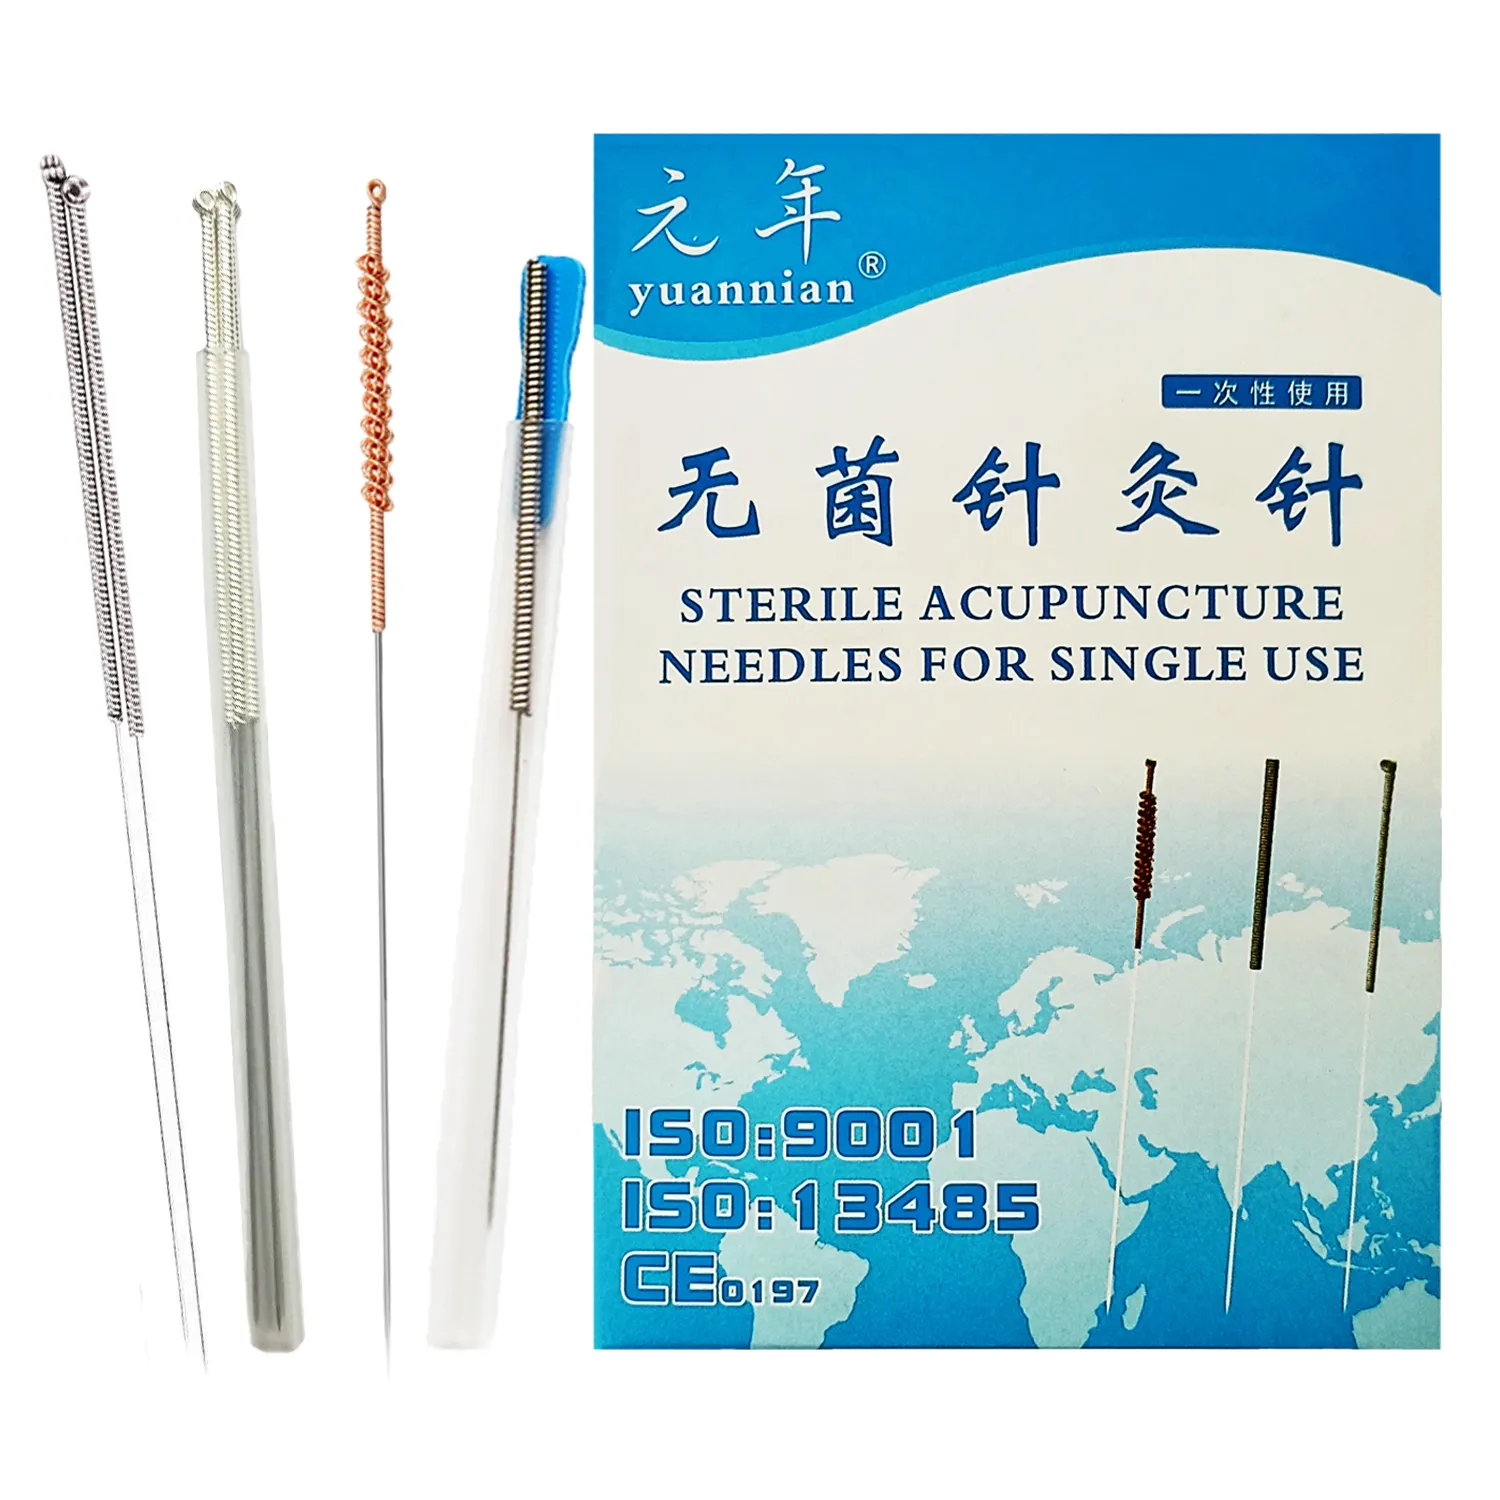 Aguja de acupuntura estéril desechable, agujas de acupuntura con tubo, precio de fábrica, China, venta al por mayor